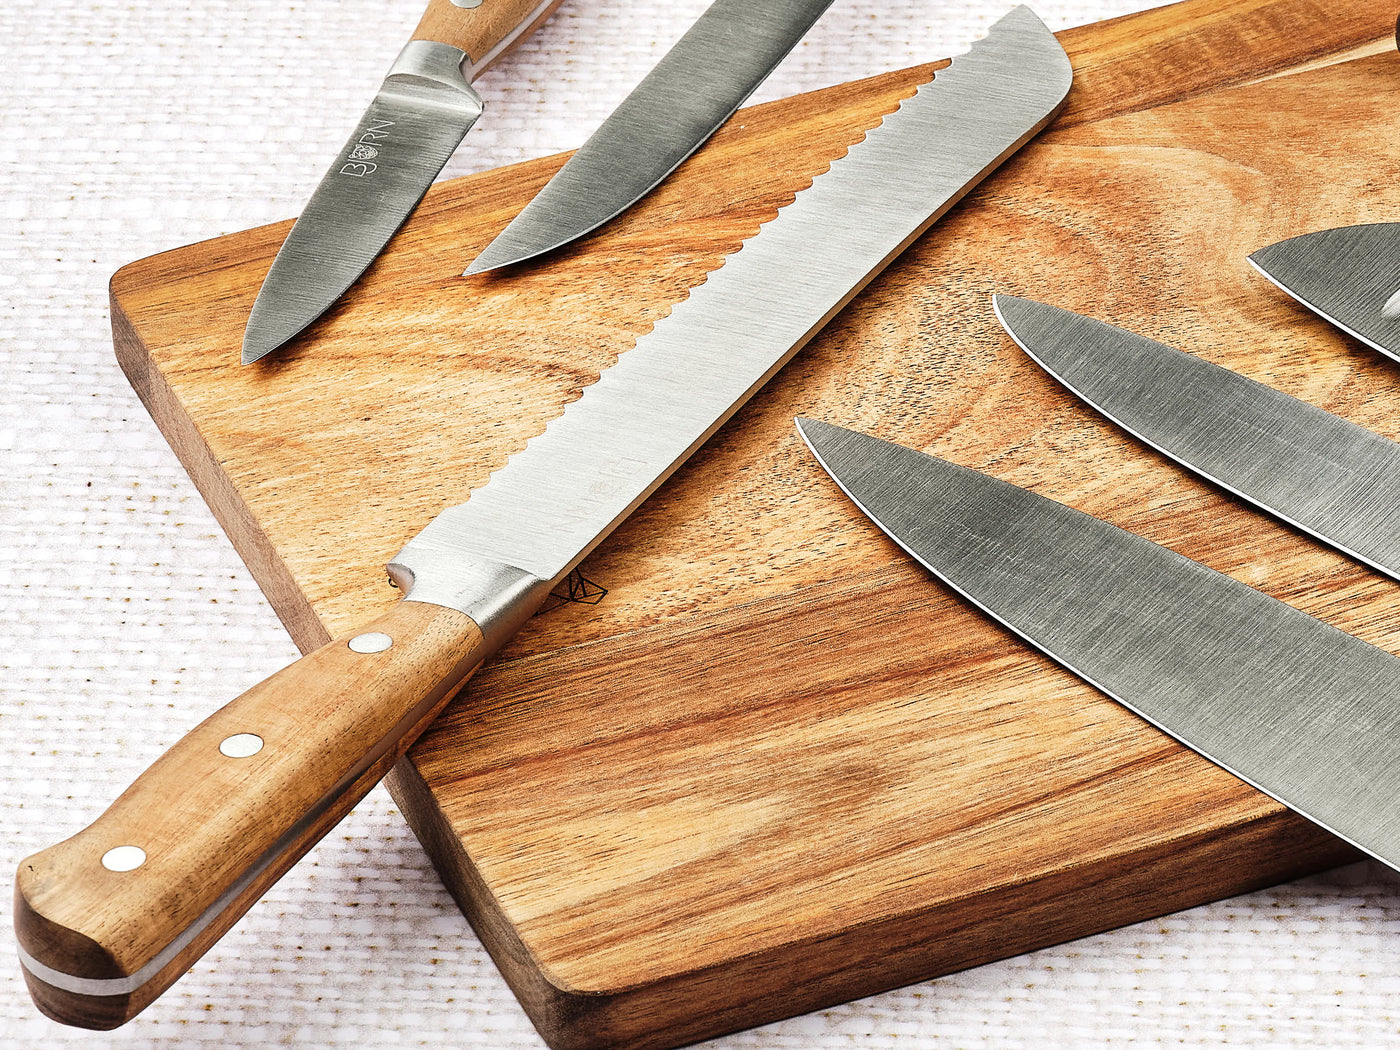 Bloc couteaux de cuisine JAKOB VANTAA - 7 pièces